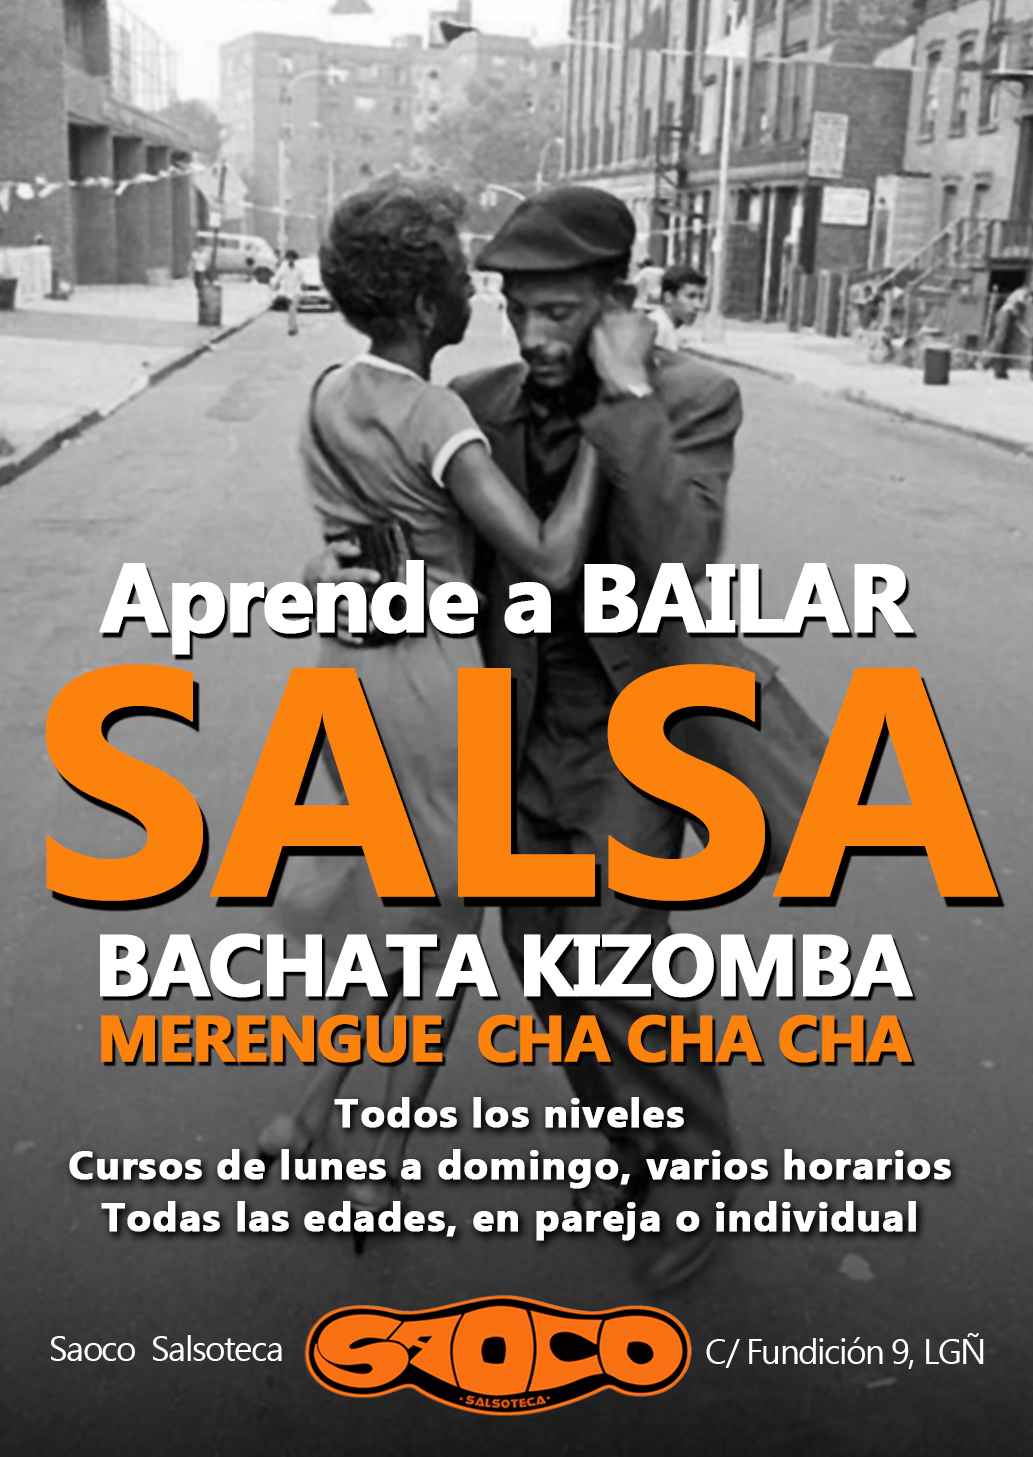 Clases de salsa y ritmos latinos en el Saoco